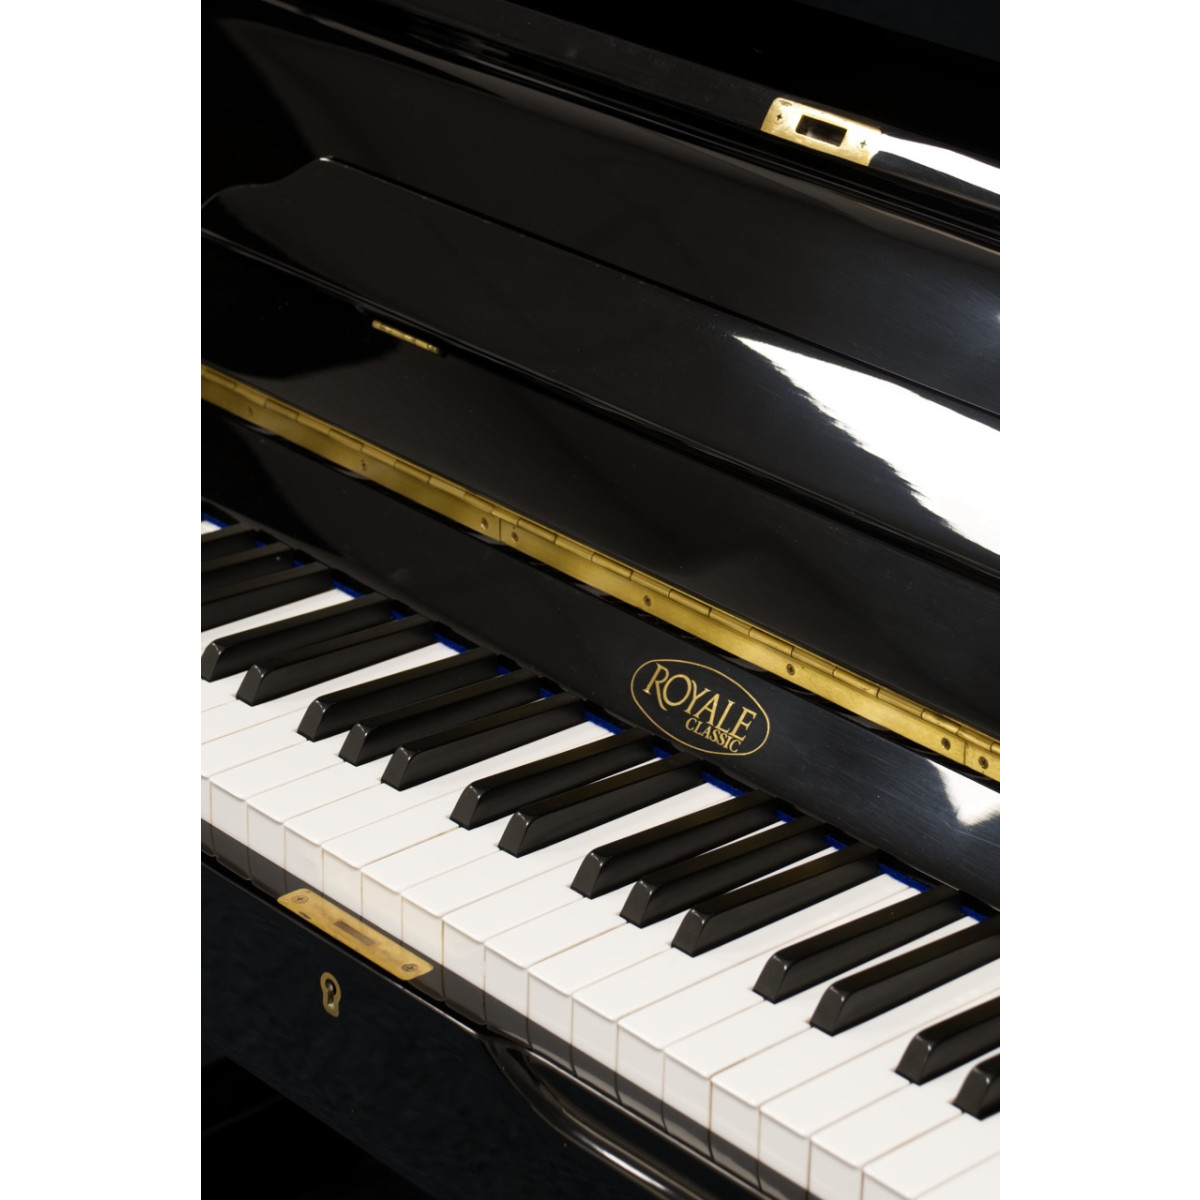 Royale Classic Klavier, Modell 49FRA, schwarz, gebraucht kaufen bei Pianelli, Ansicht: Klaviatur